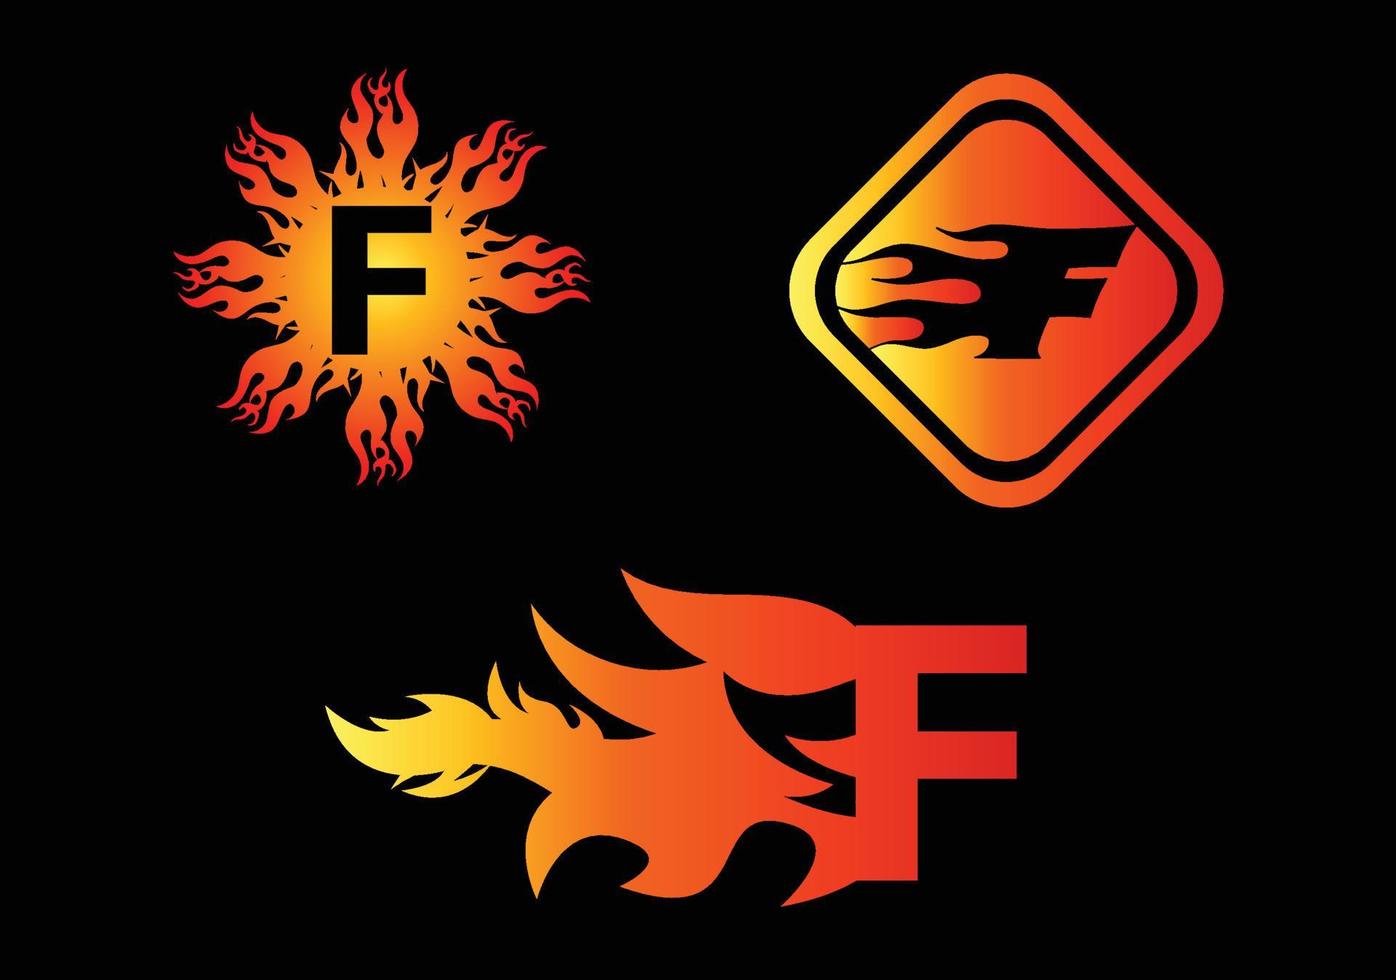 Plantilla de diseño de logotipo e icono de letra f de fuego vector